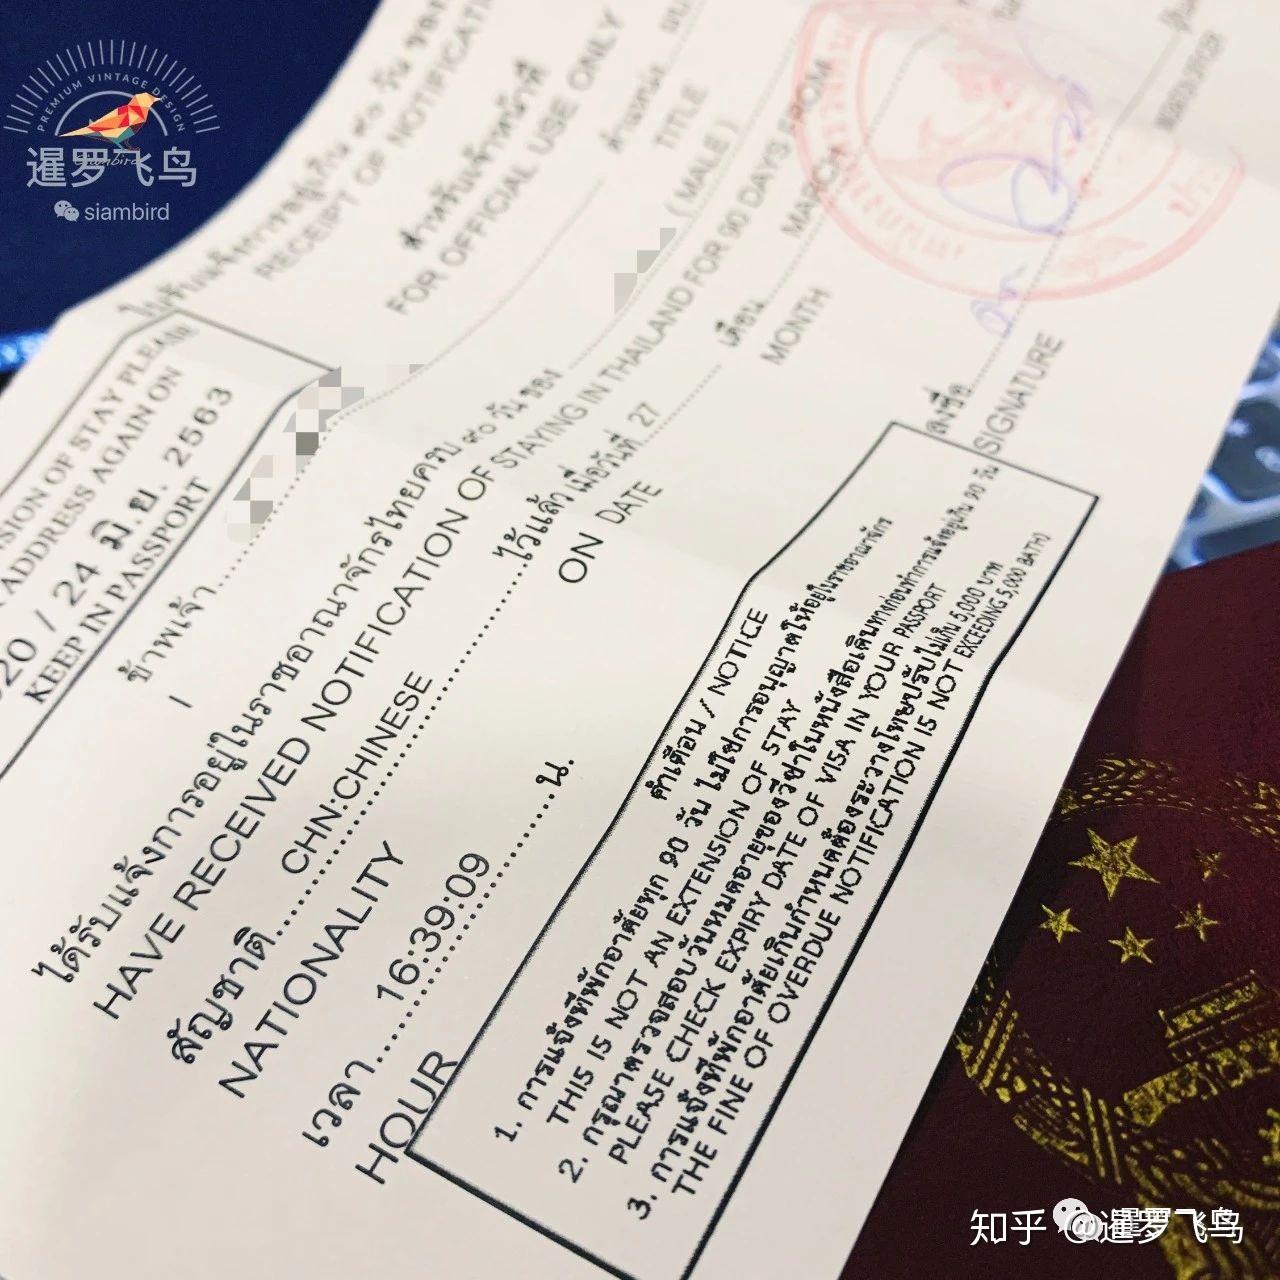 泰国签证需网上预约 否则无法办理